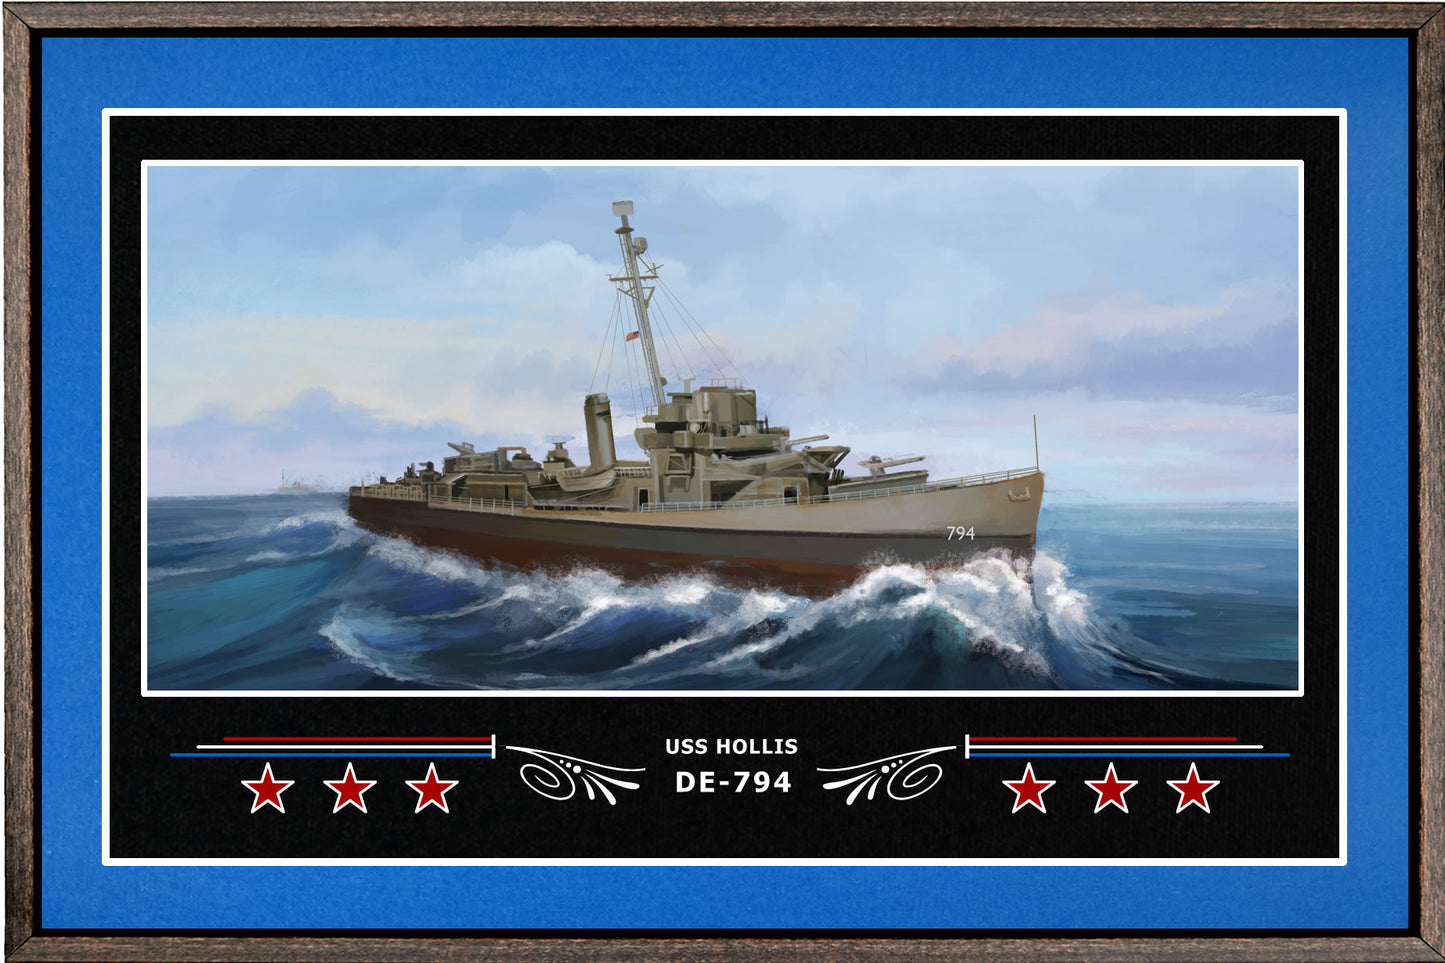 USS HOLLIS DE 794 BOX FRAMED CANVAS ART BLUE